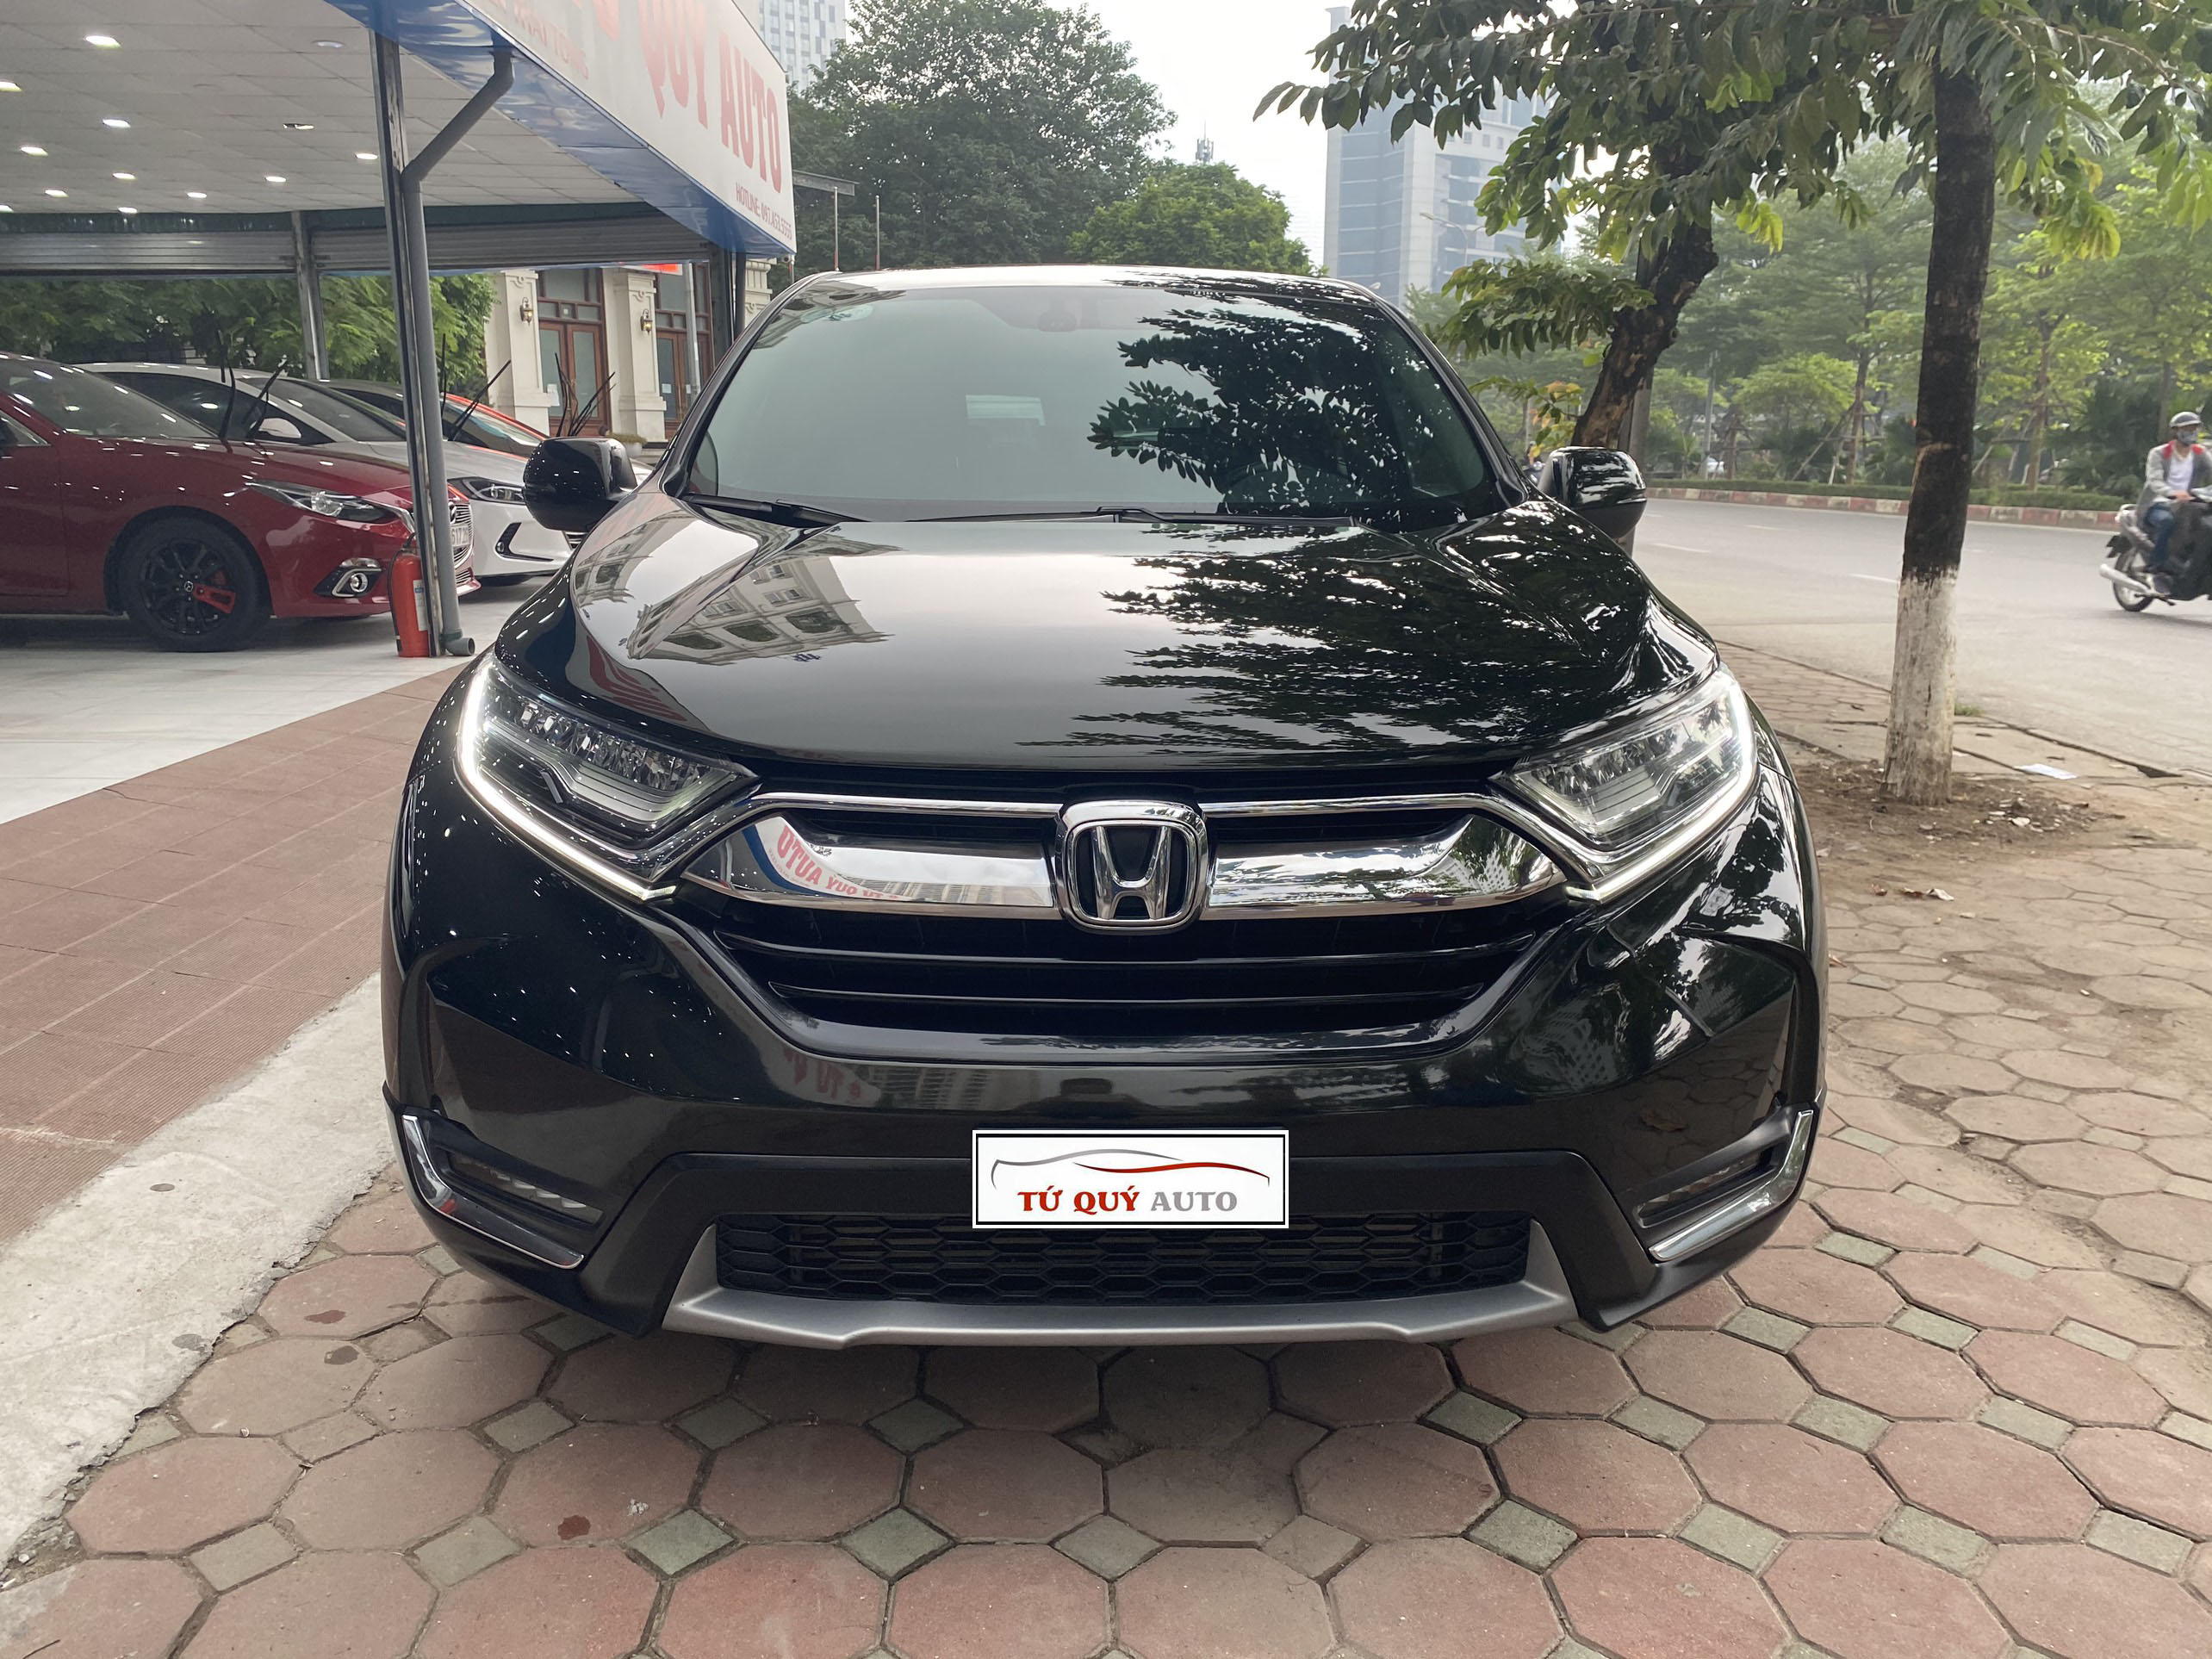 Mẫu Body KIT nhập khẩu Thái Lan dành cho Honda CRV 2018 đẹp say mê